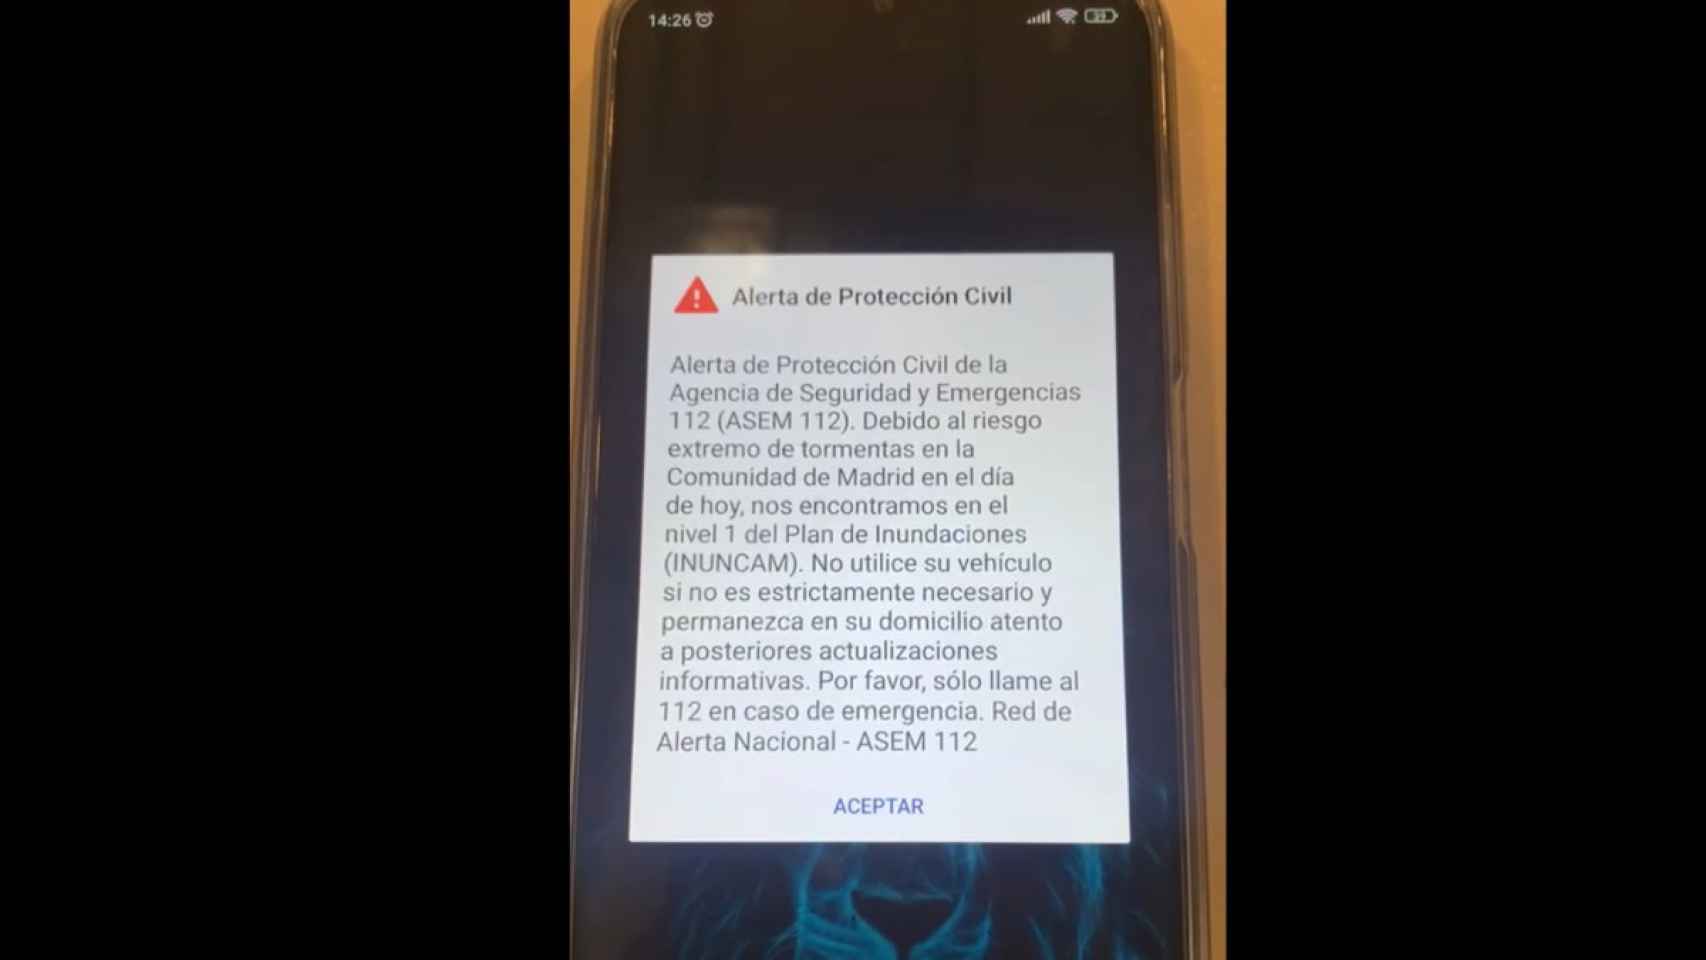 Alerta de Protección Civil lanzada con motivo de las tormentas en Madrid.